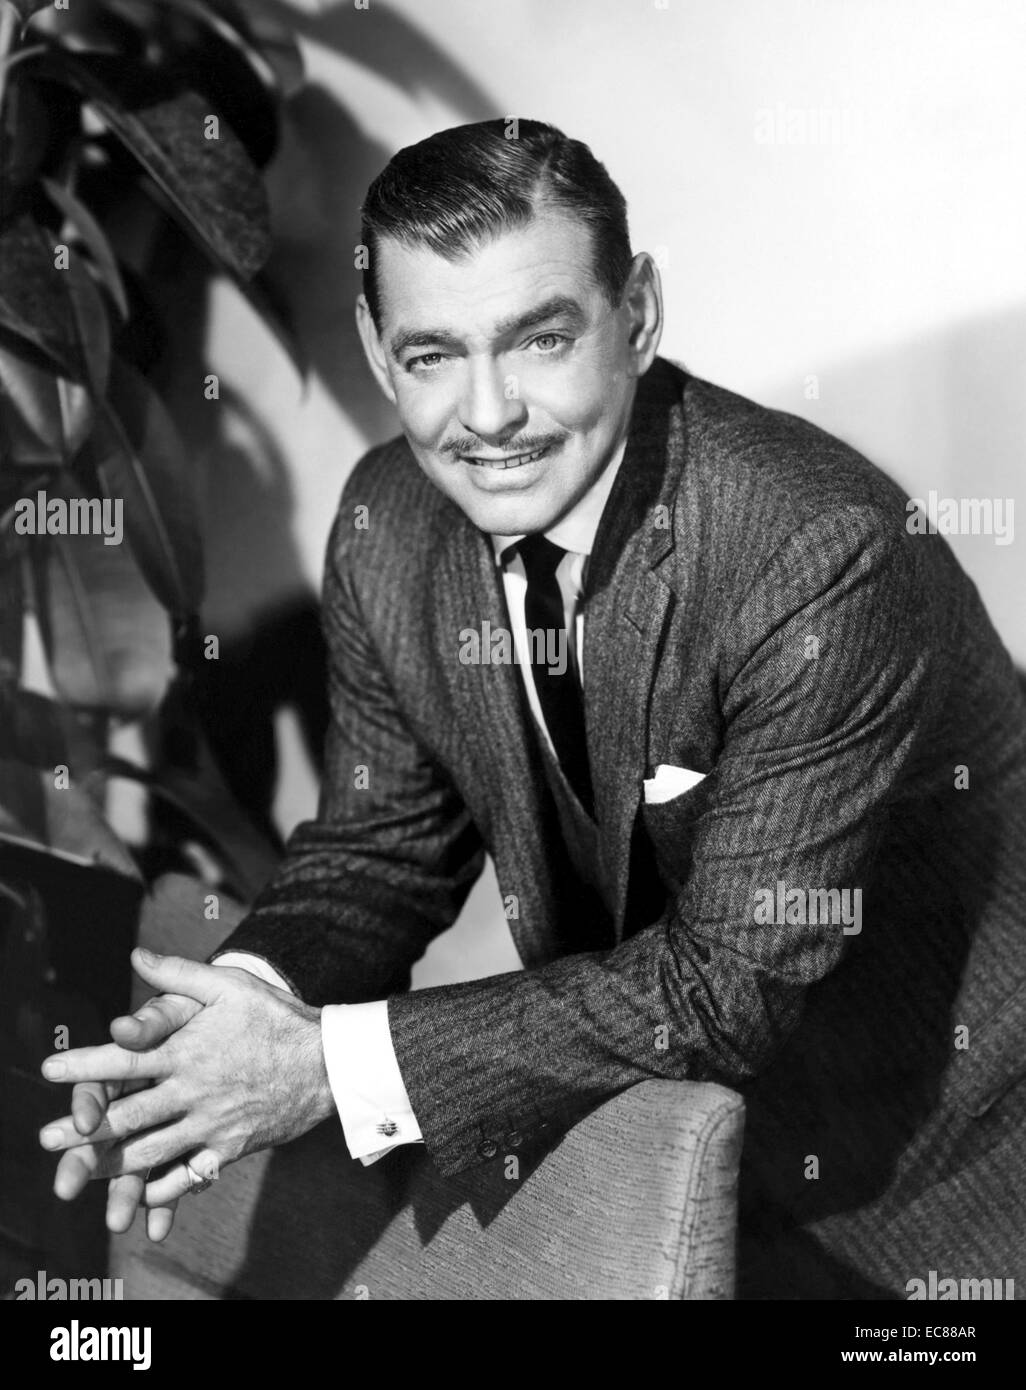 Photo de Clark Gable (1901-1960) acteur de cinéma américain. Datée 1950 Banque D'Images